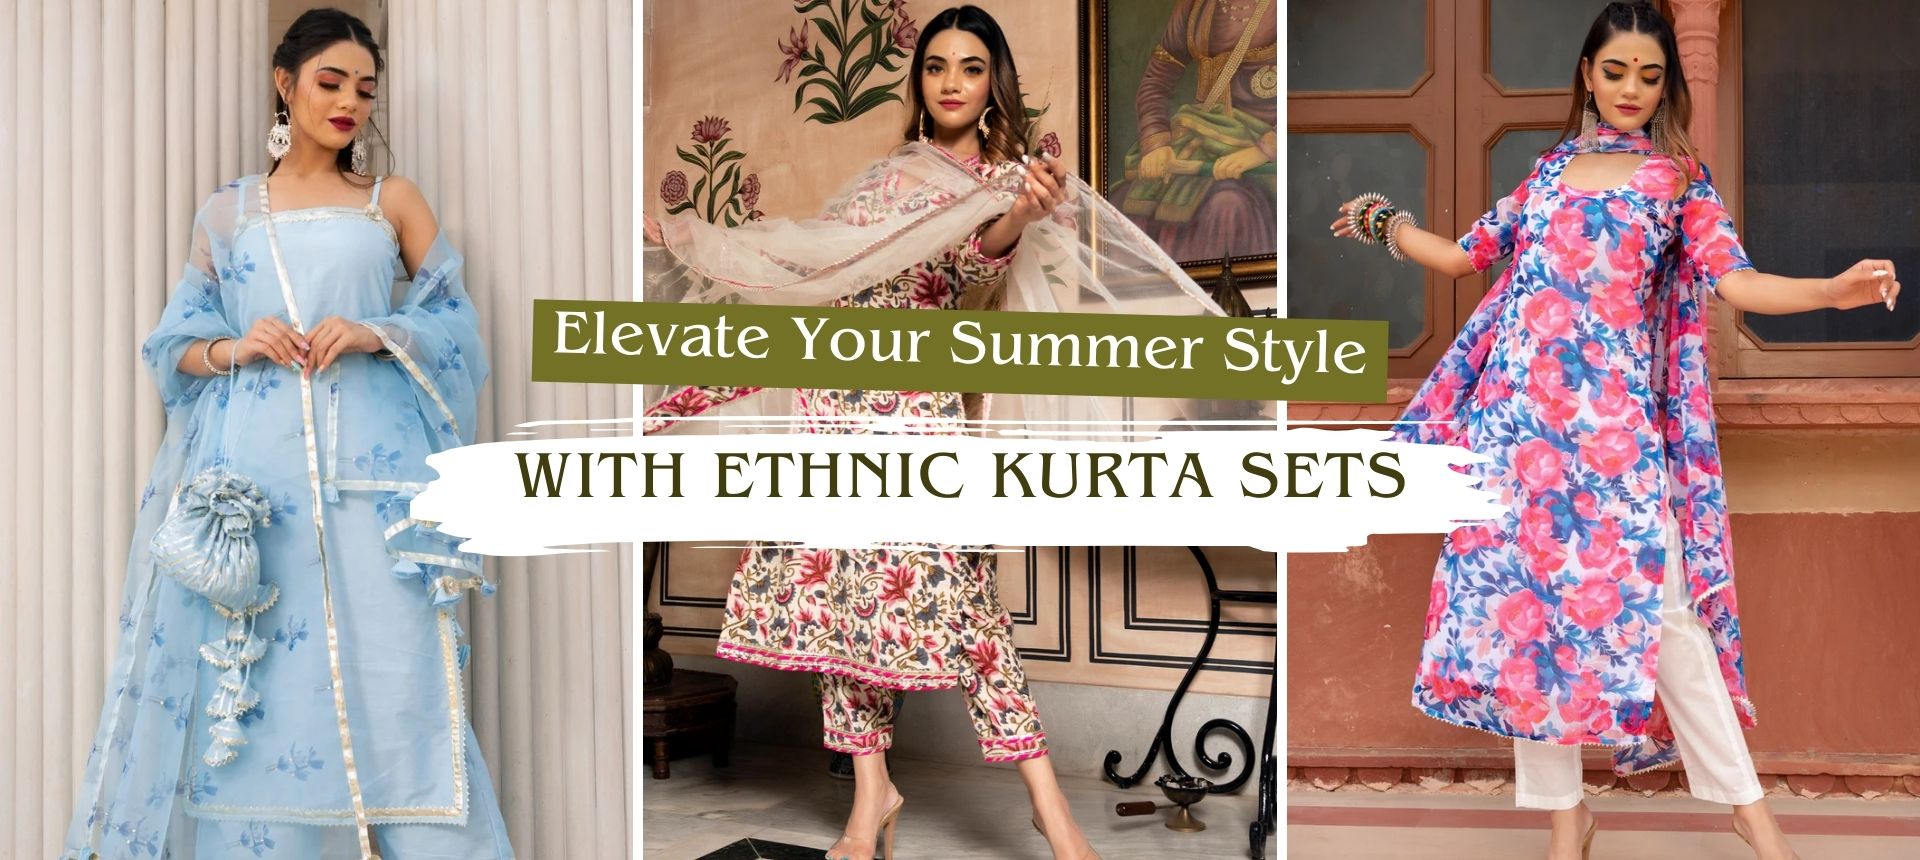 Style with Ethnic Kurta Sets